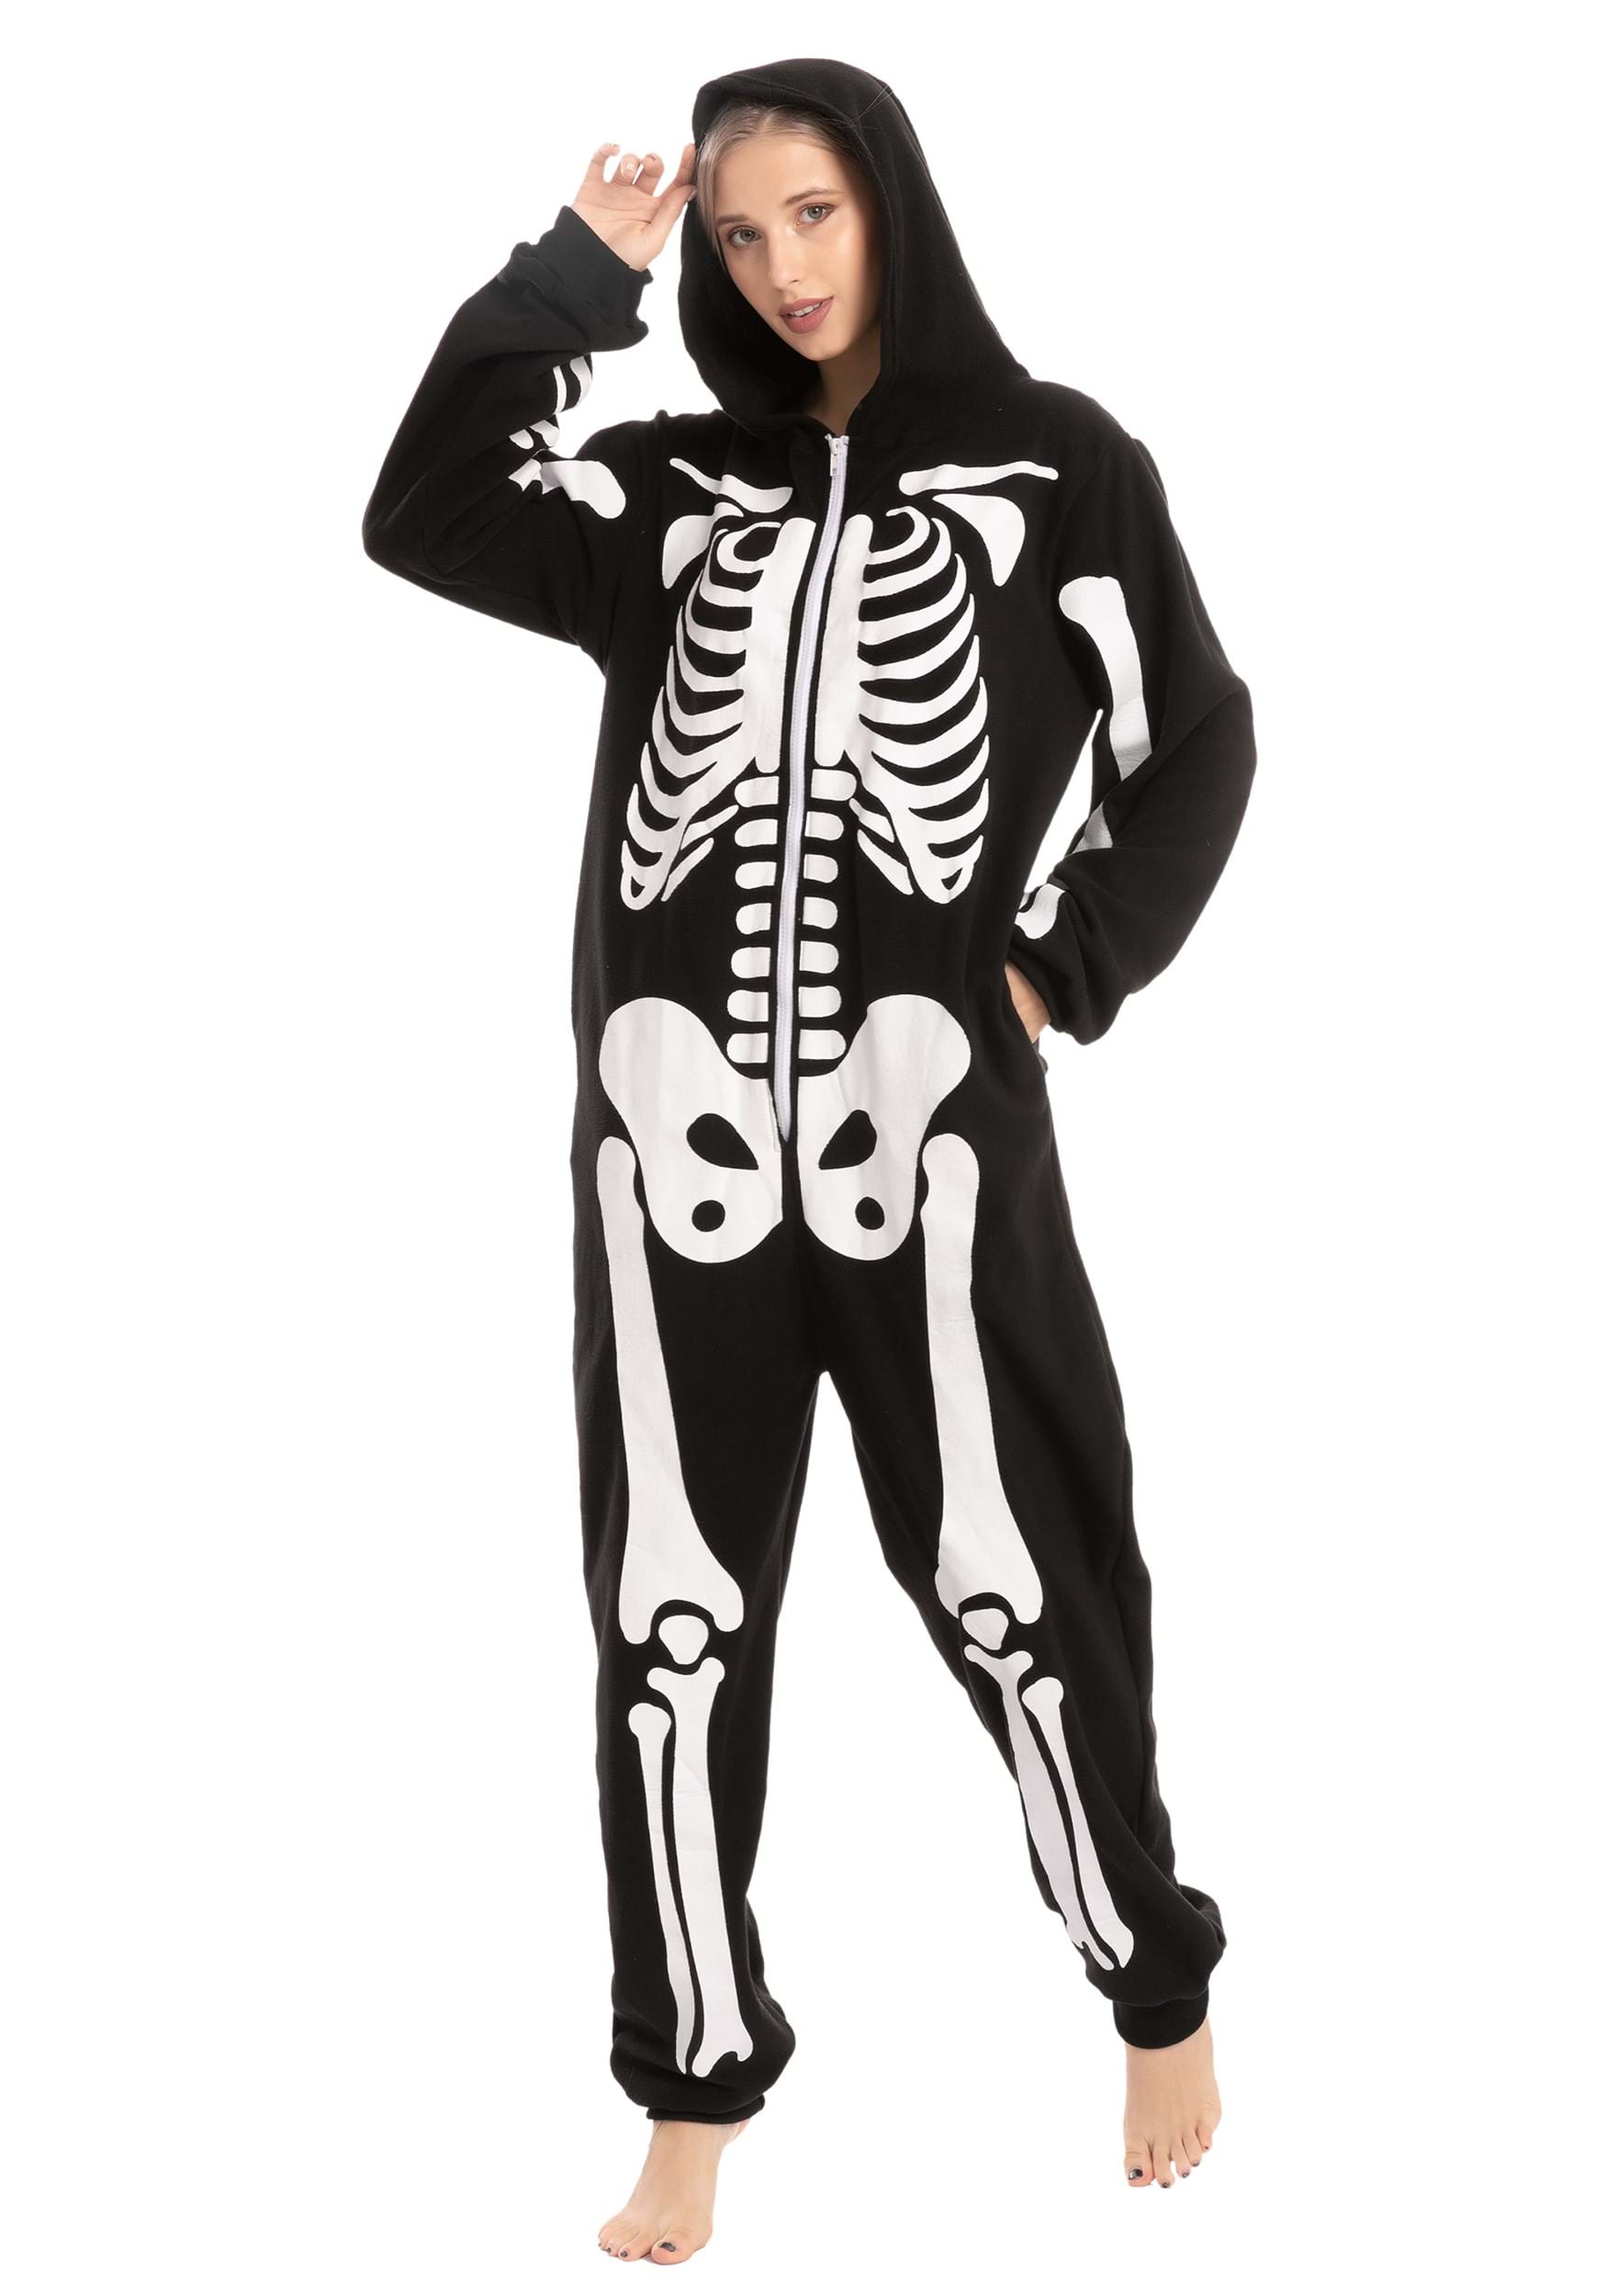 Hooded Skeleton Adult Onesies